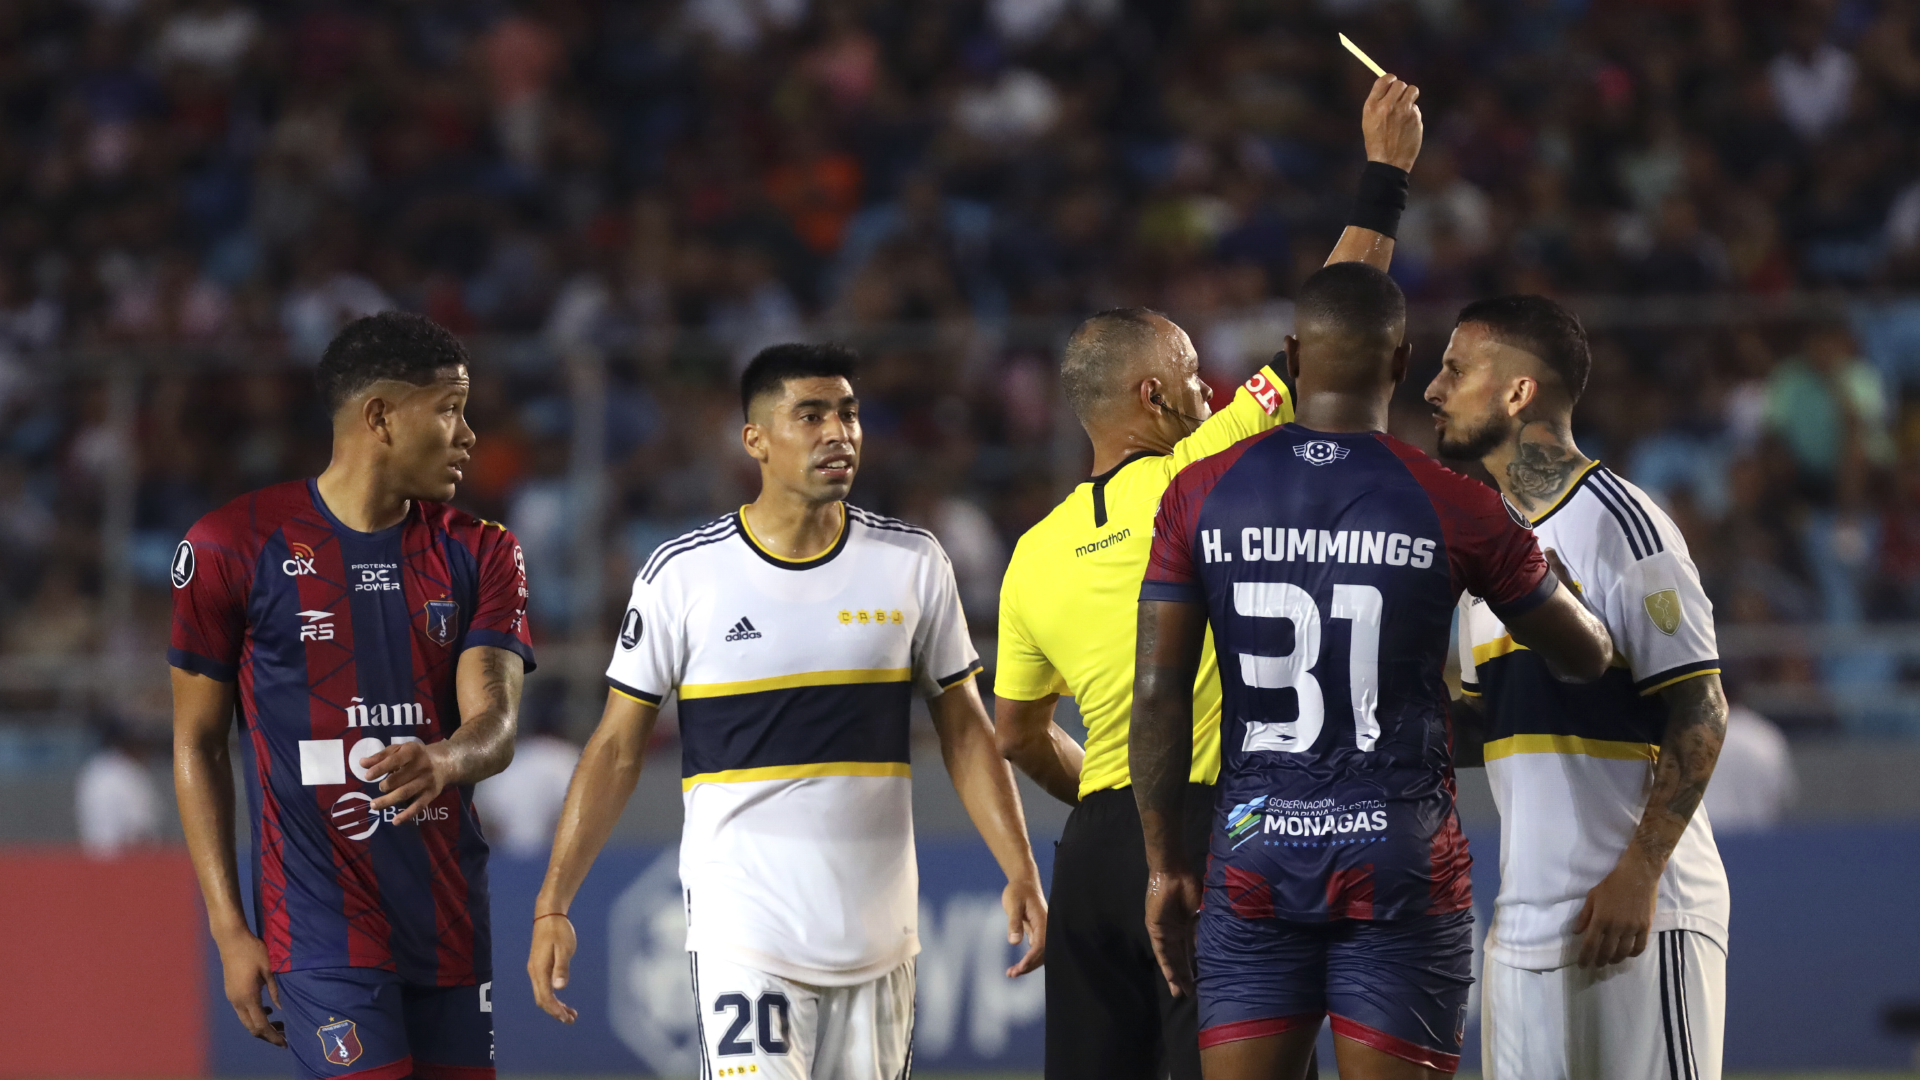 Tras el empate y con dos jugadores menos, el técnico de Boca Juniors dijo que “me voy conforme porque jugamos un gran partido”